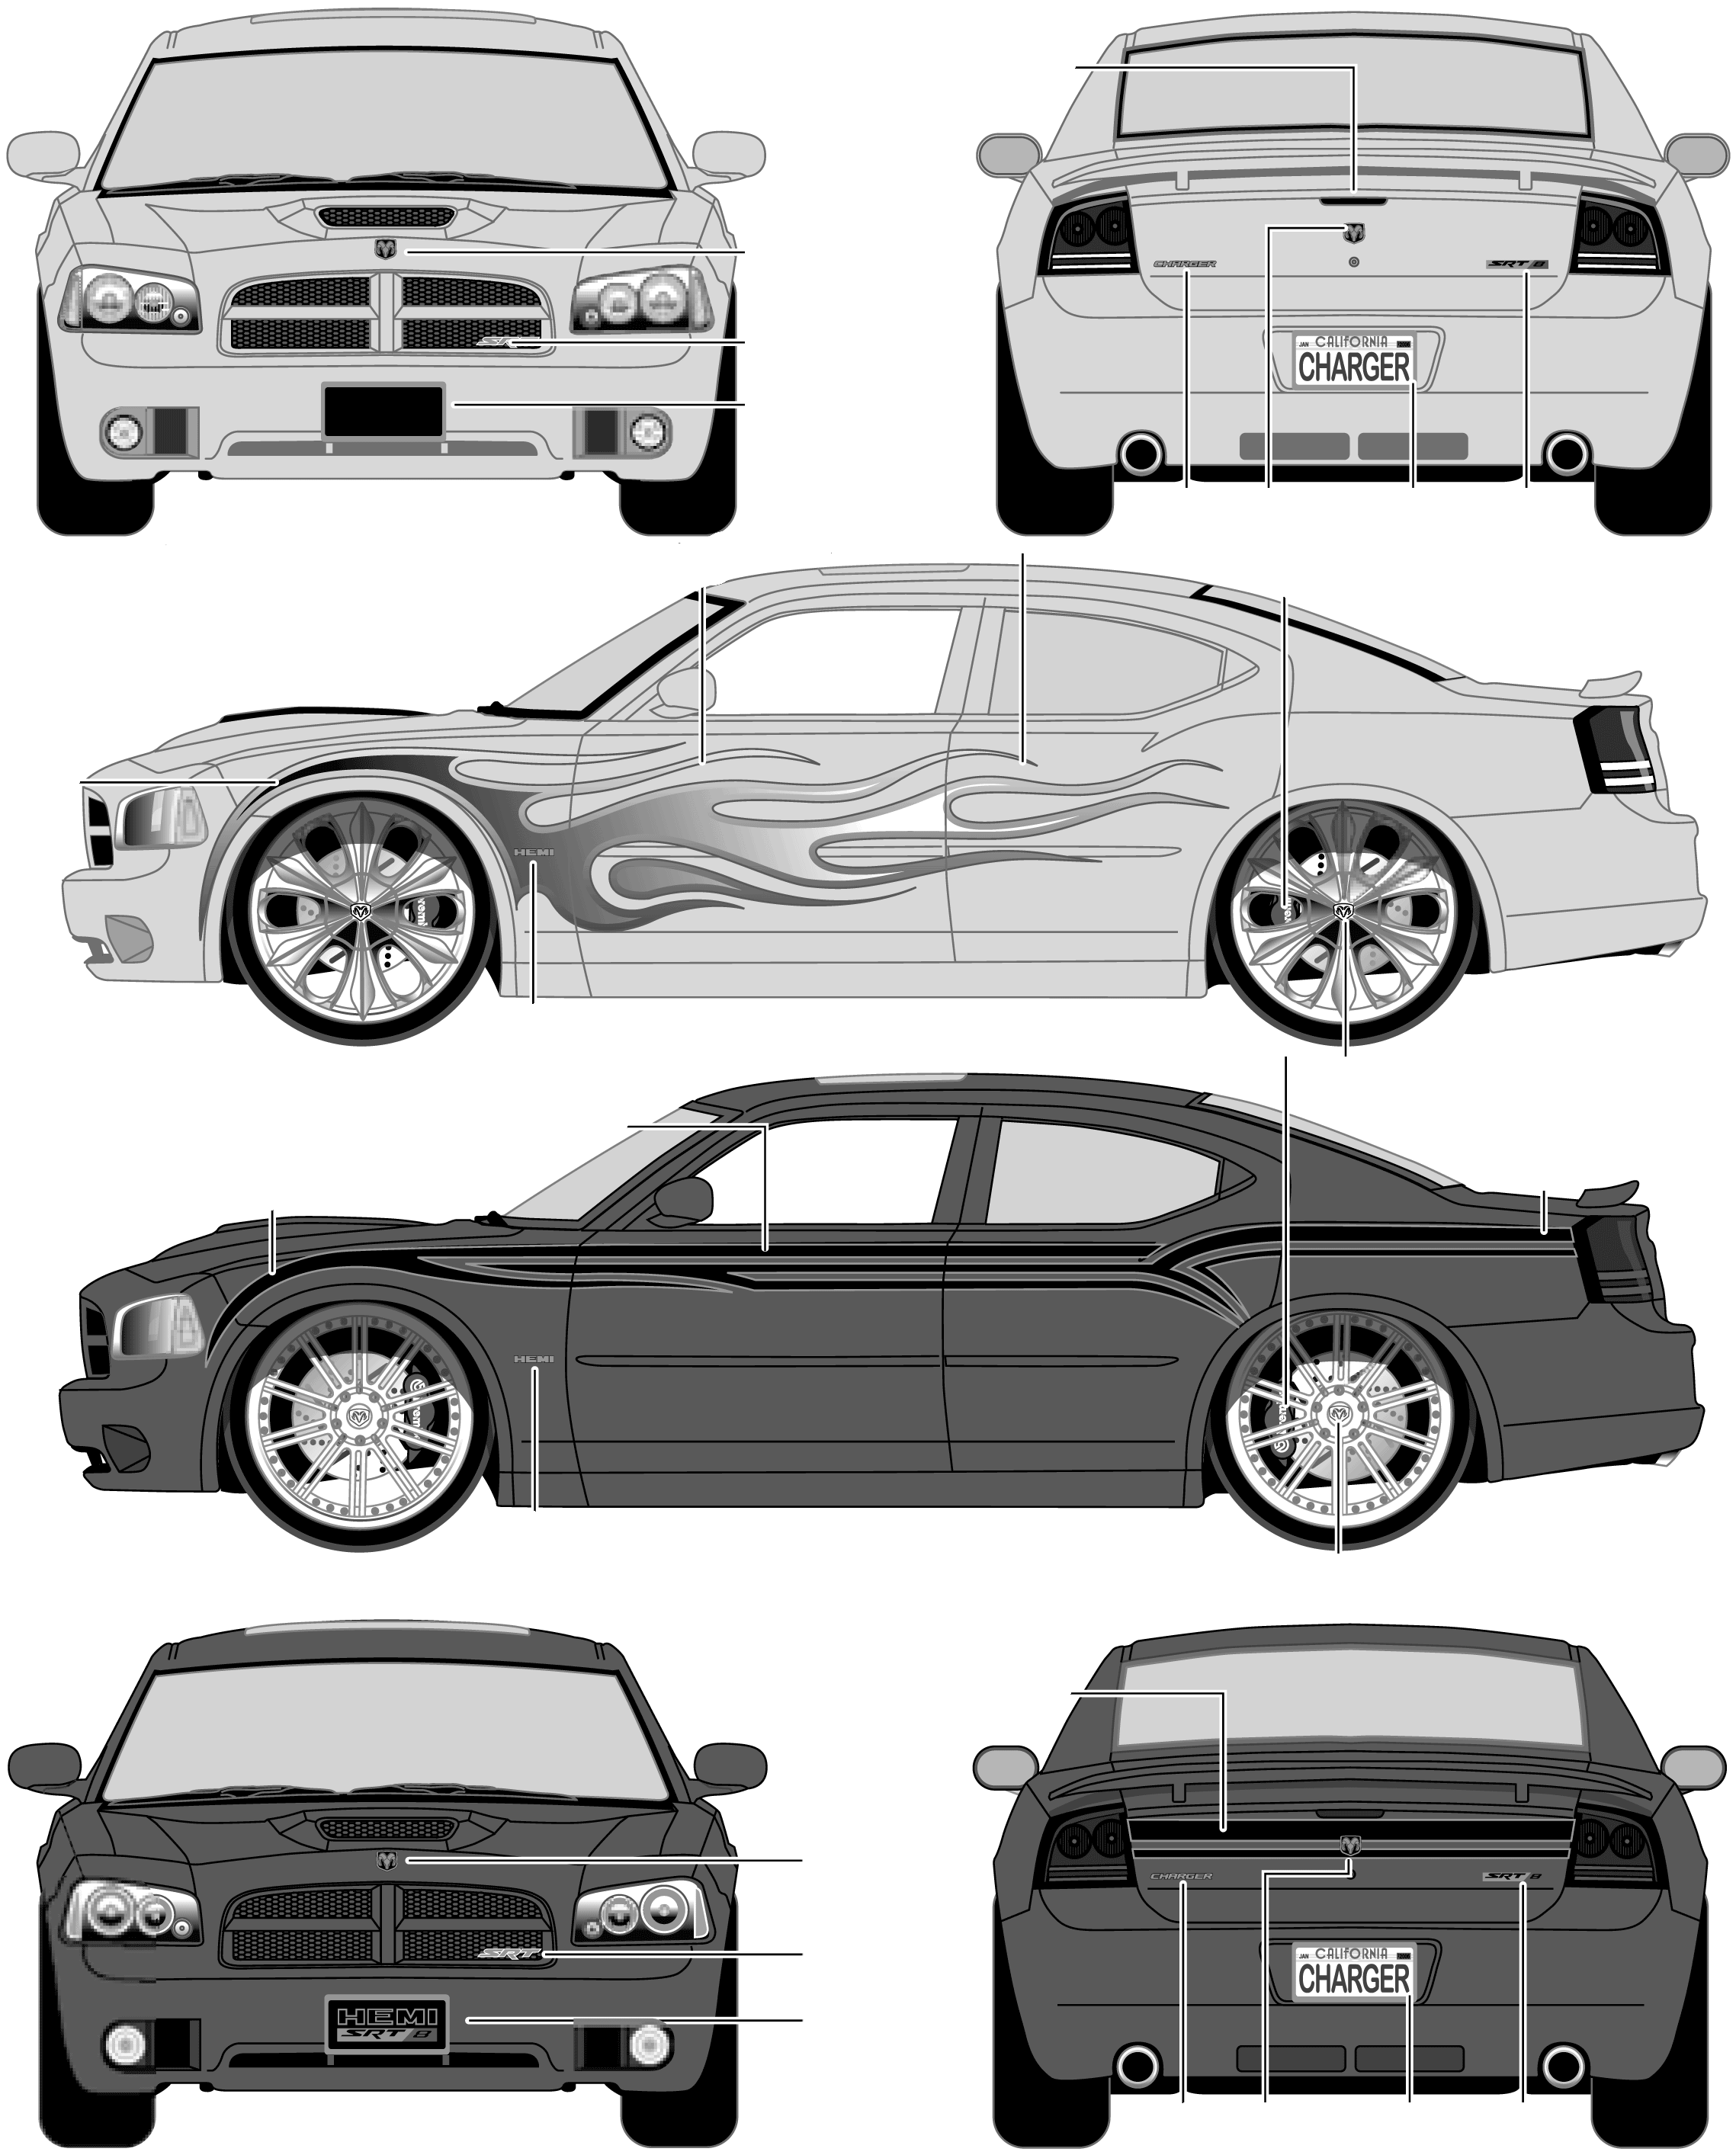 2006 Dodge Charger SRT8 Sedan blueprints free - Outlines